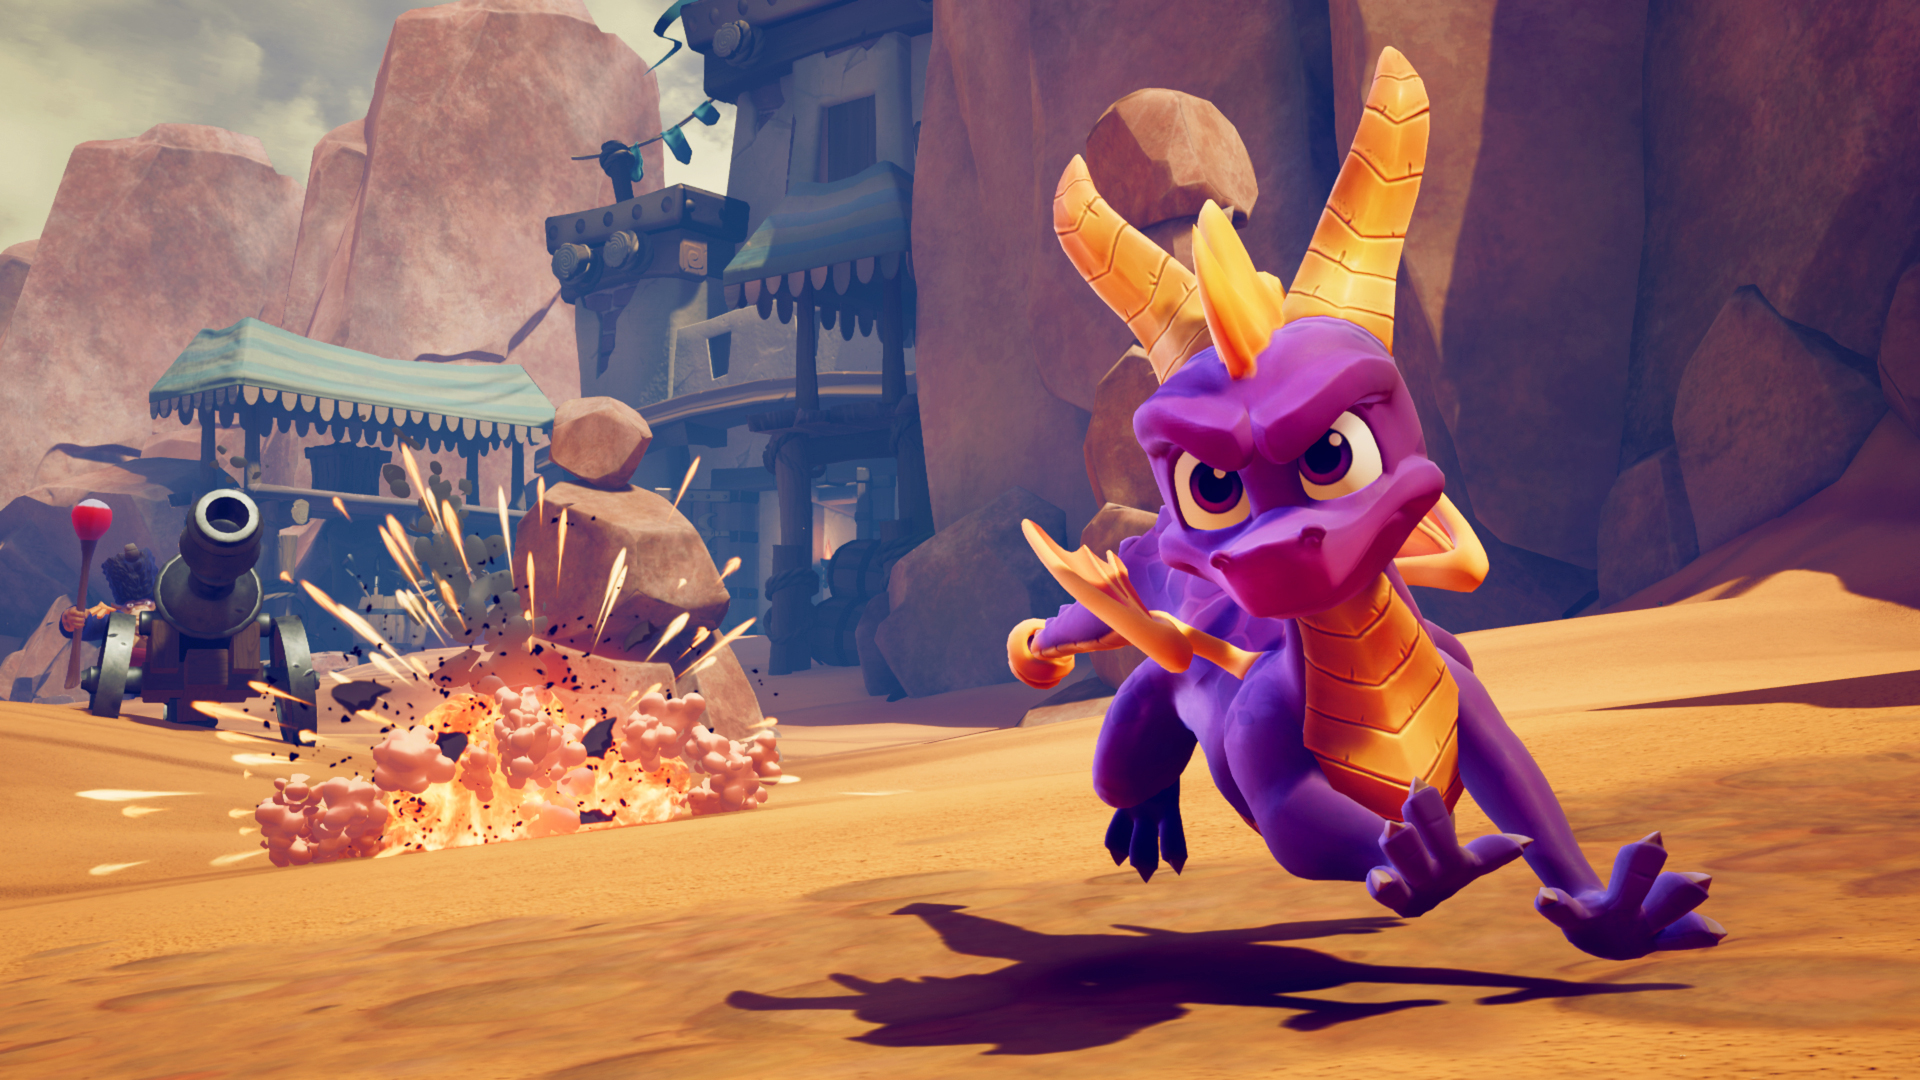 Spyro the dragon running across a desert